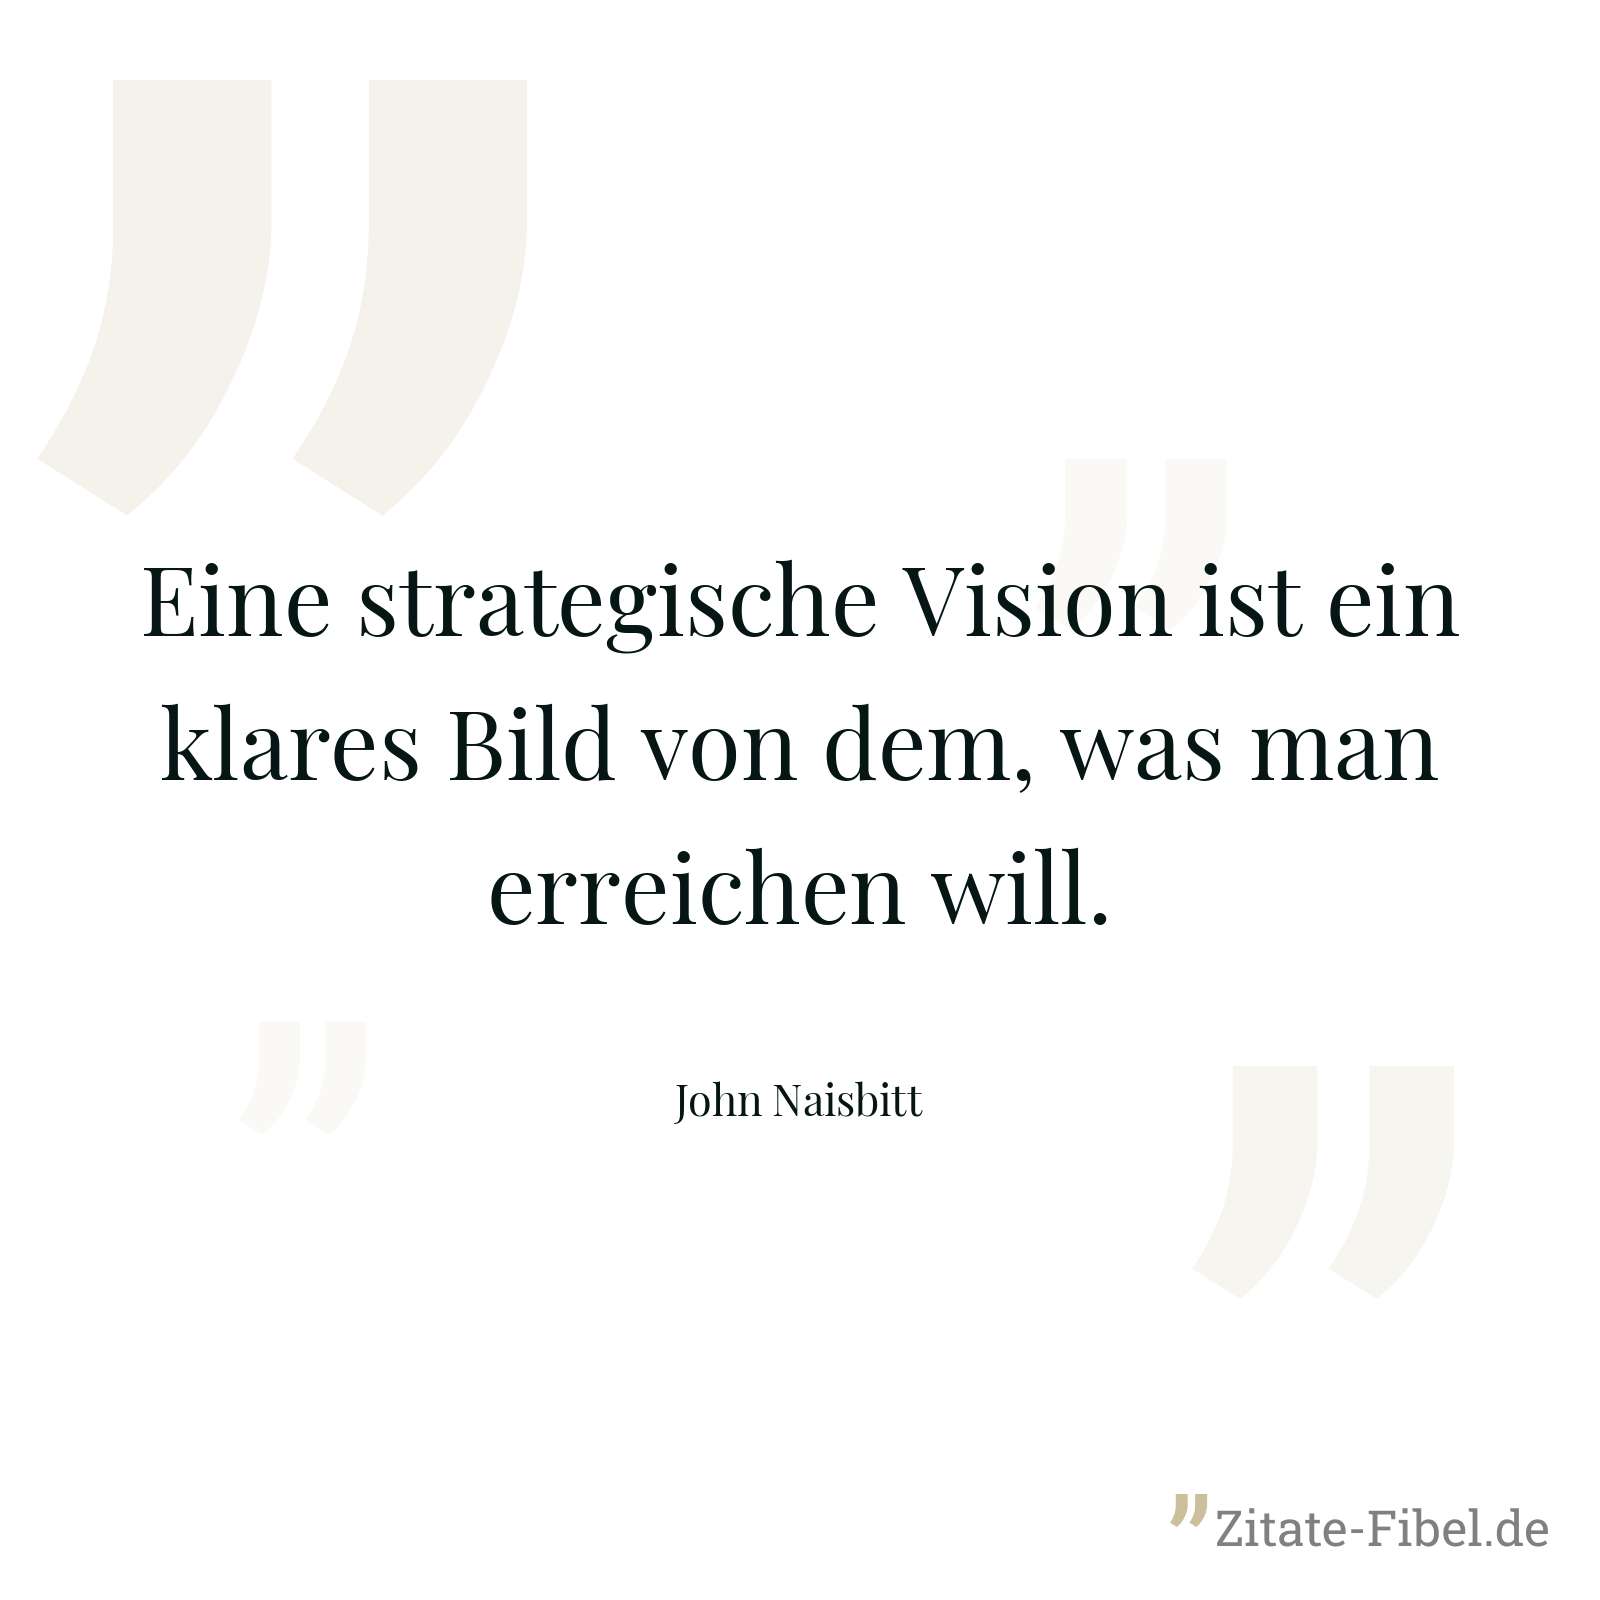 Eine strategische Vision ist ein klares Bild von dem, was man erreichen will. - John Naisbitt